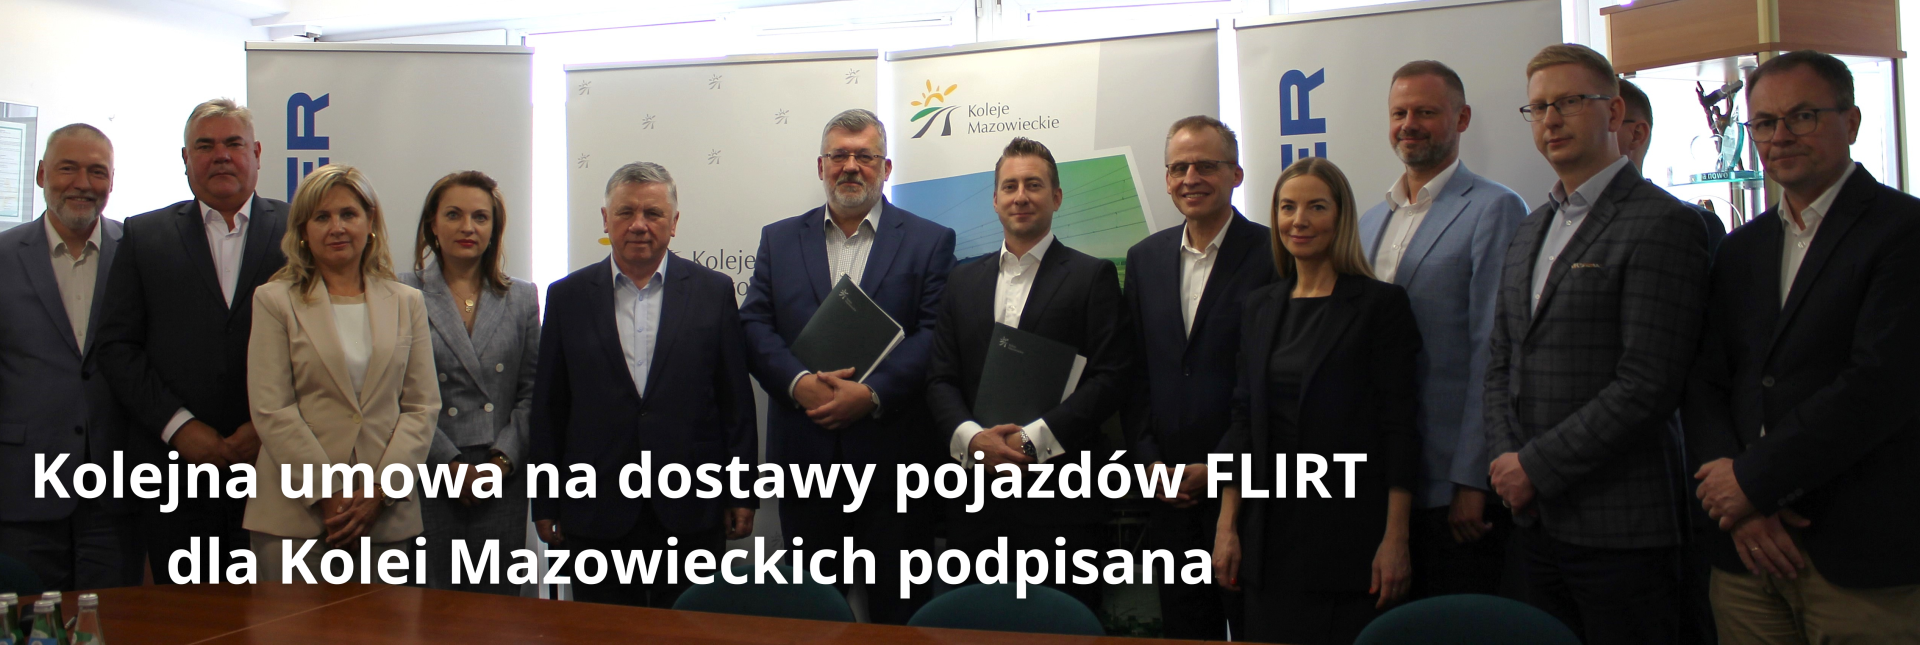 Przedstawiciele Kolei Mazowieckich oraz Stadler Polska na podpisaniu umowy na dostawy 15 pojazdów FLIRT z opcją na dodatkowych 10 jednostek 